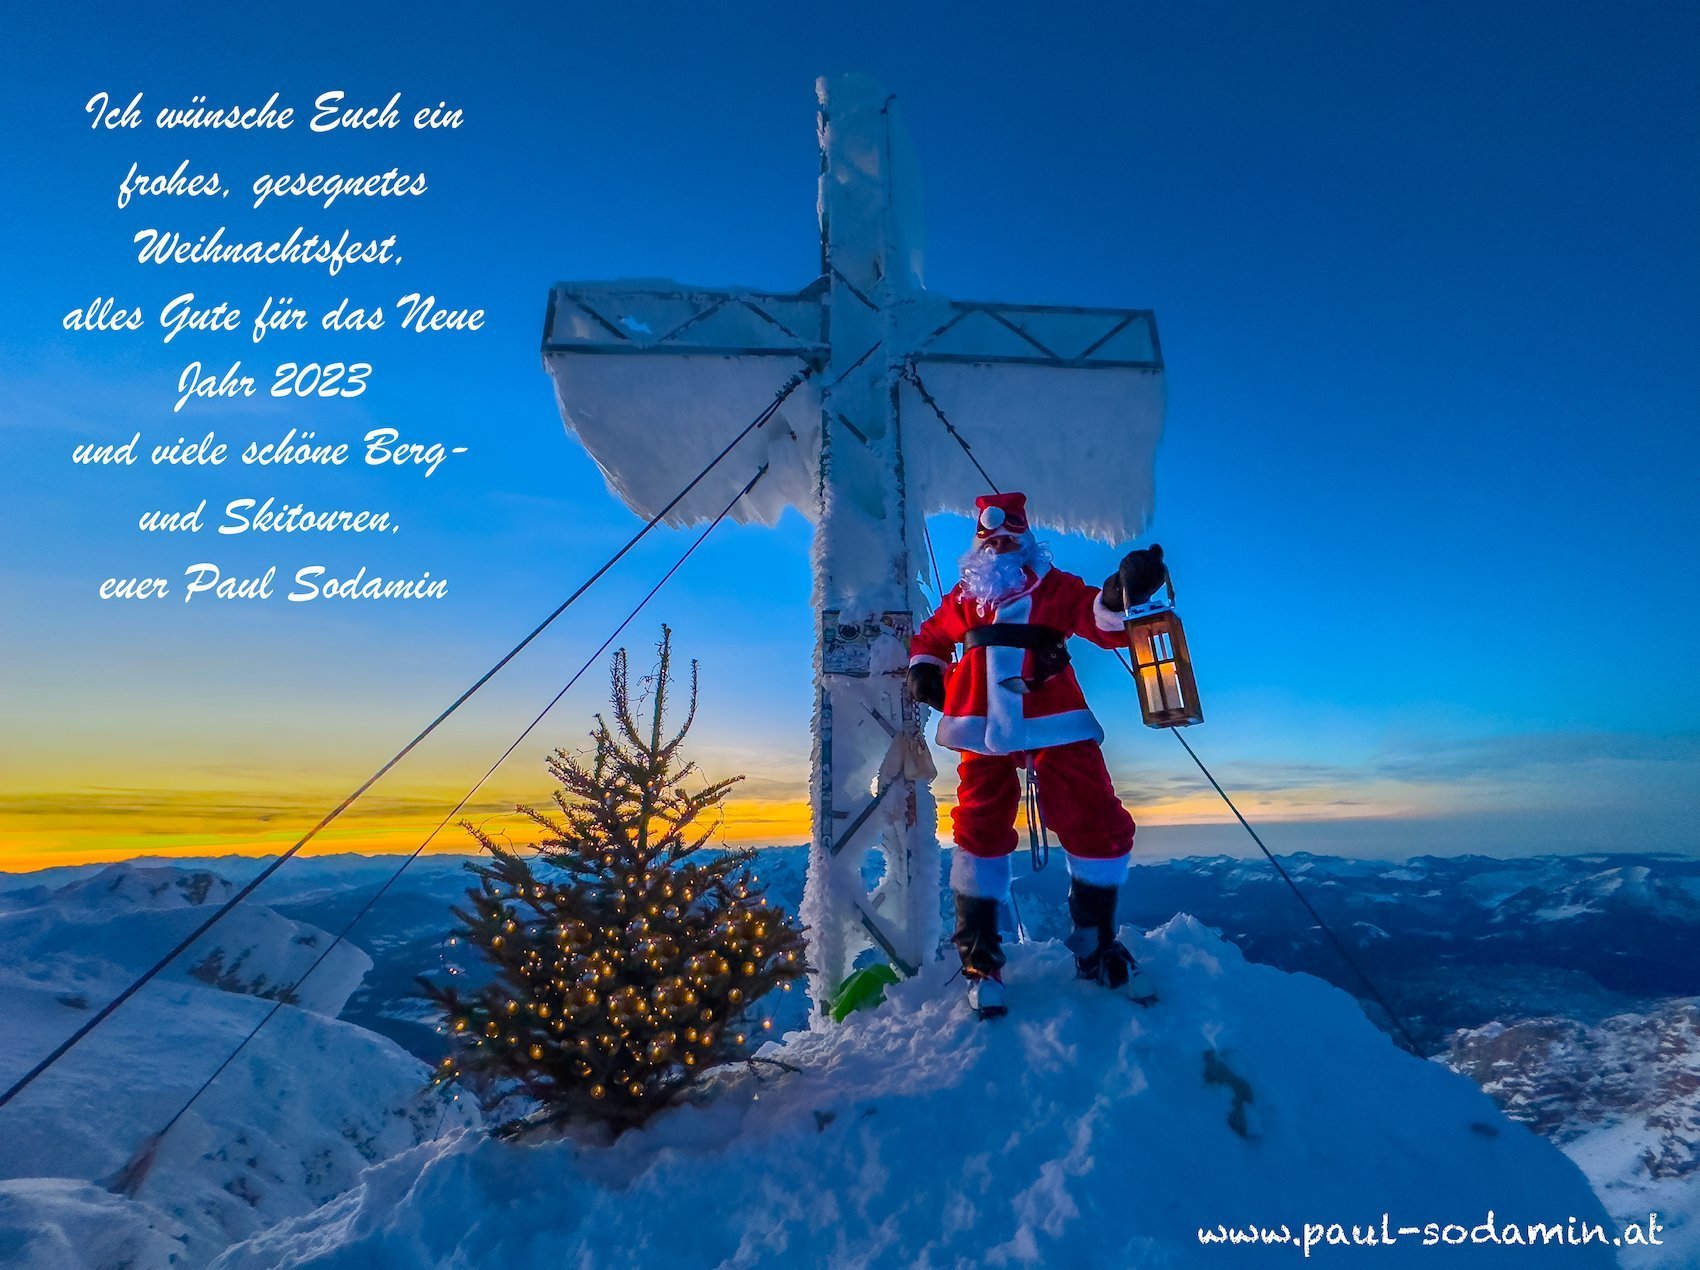 Ich wünsche Euch ein frohes, gesegnetes Weihnachtsfest, alles Gute für das neue Jahr 2023 und viele schöne Berg-und Skitouren, euer Paul Sodamin